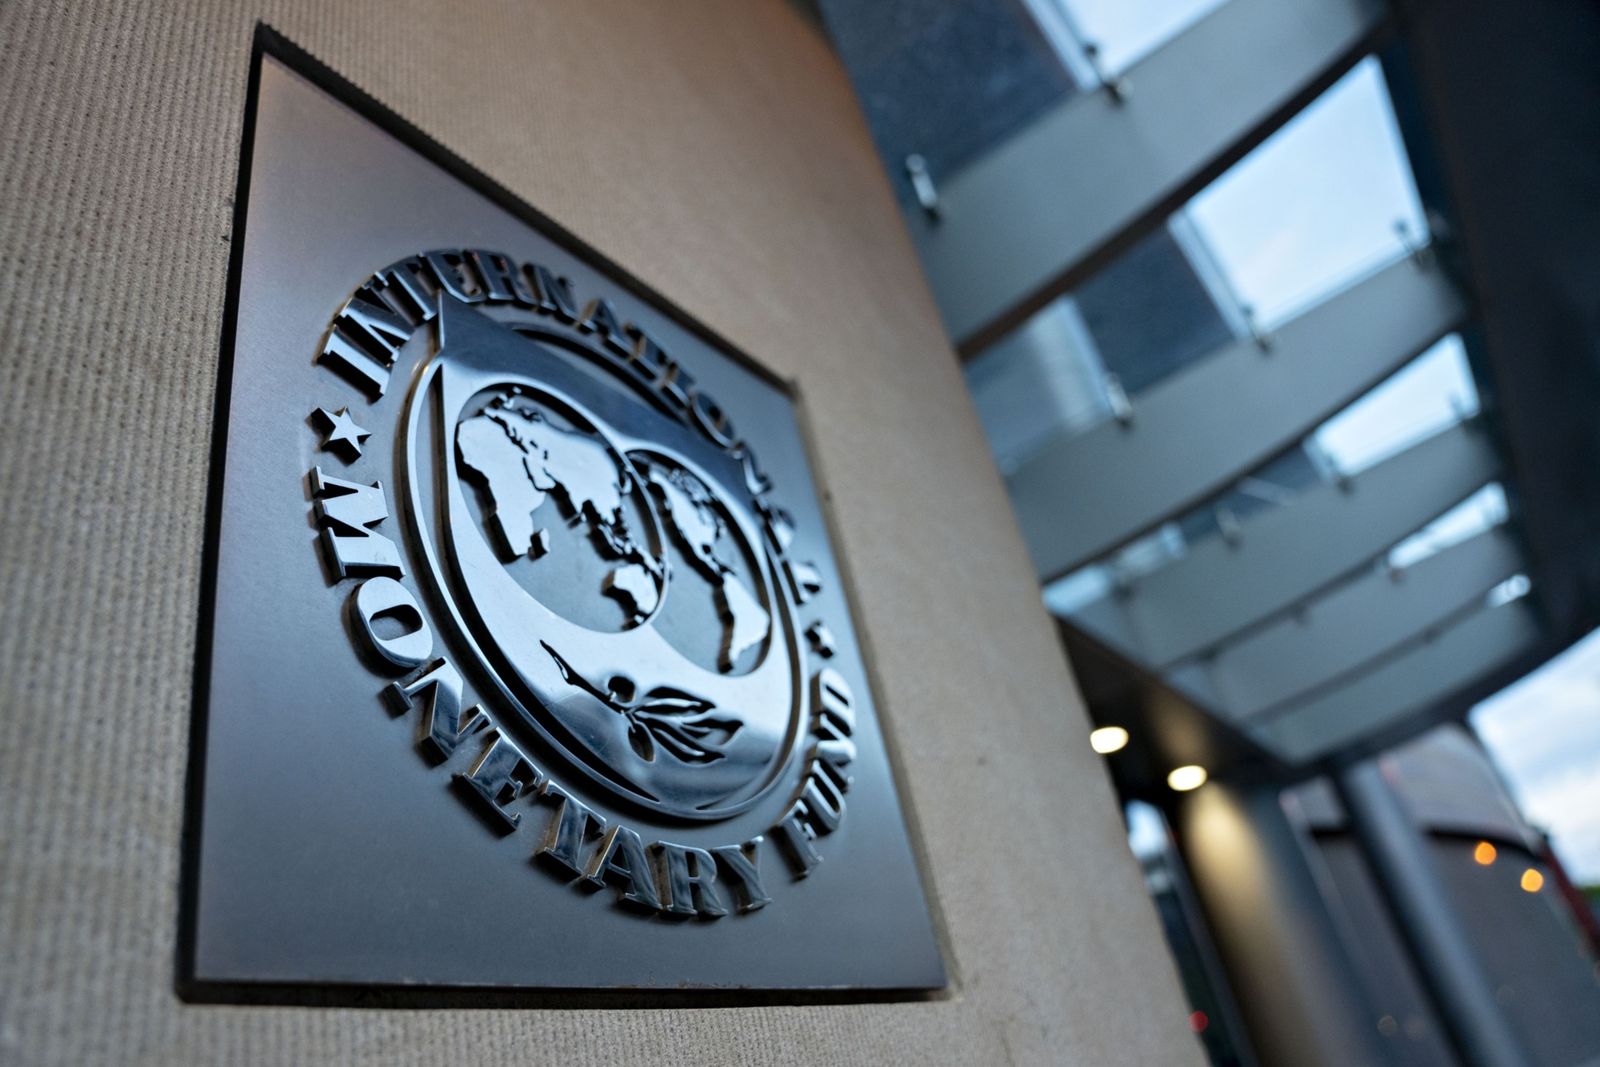 مصر تحصل على 3 مليارات دولار من صندوق النقد الدولي